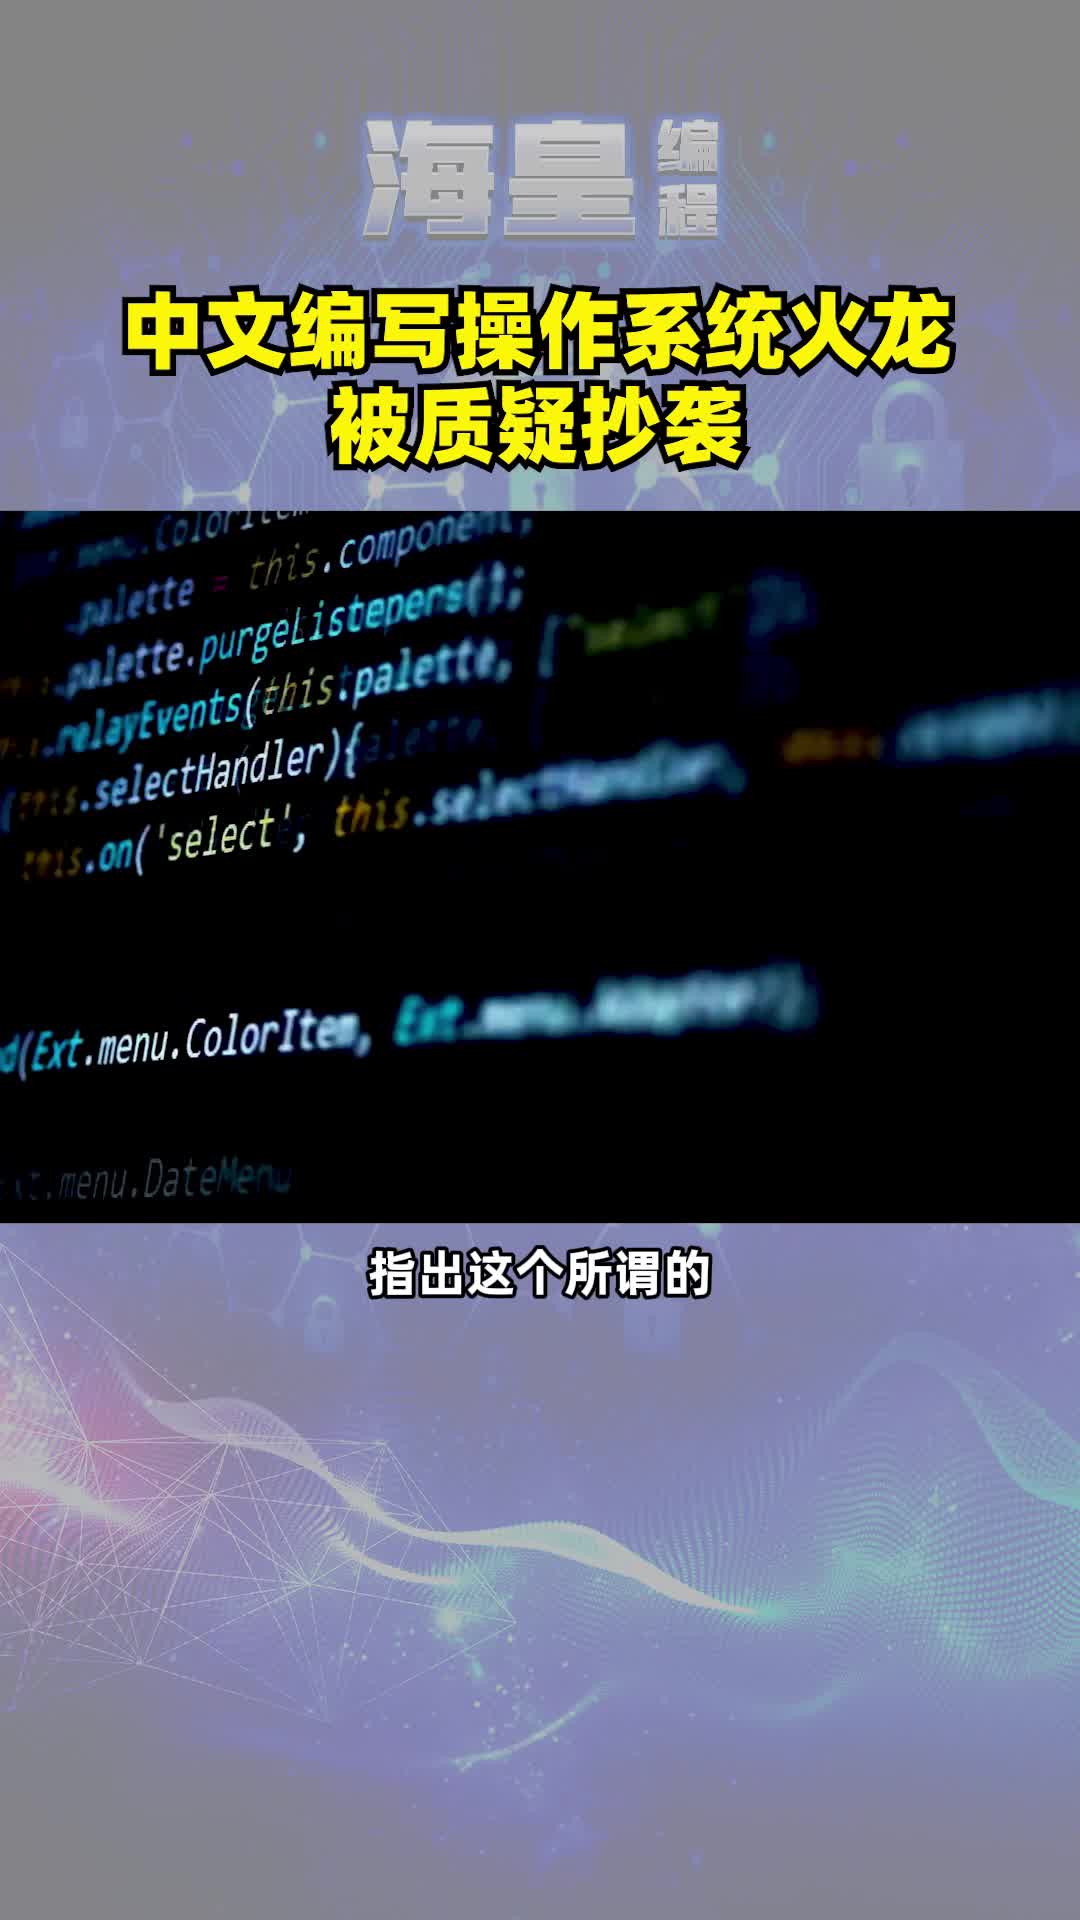 首个中文编写的操作系统火龙”被质疑抄袭。